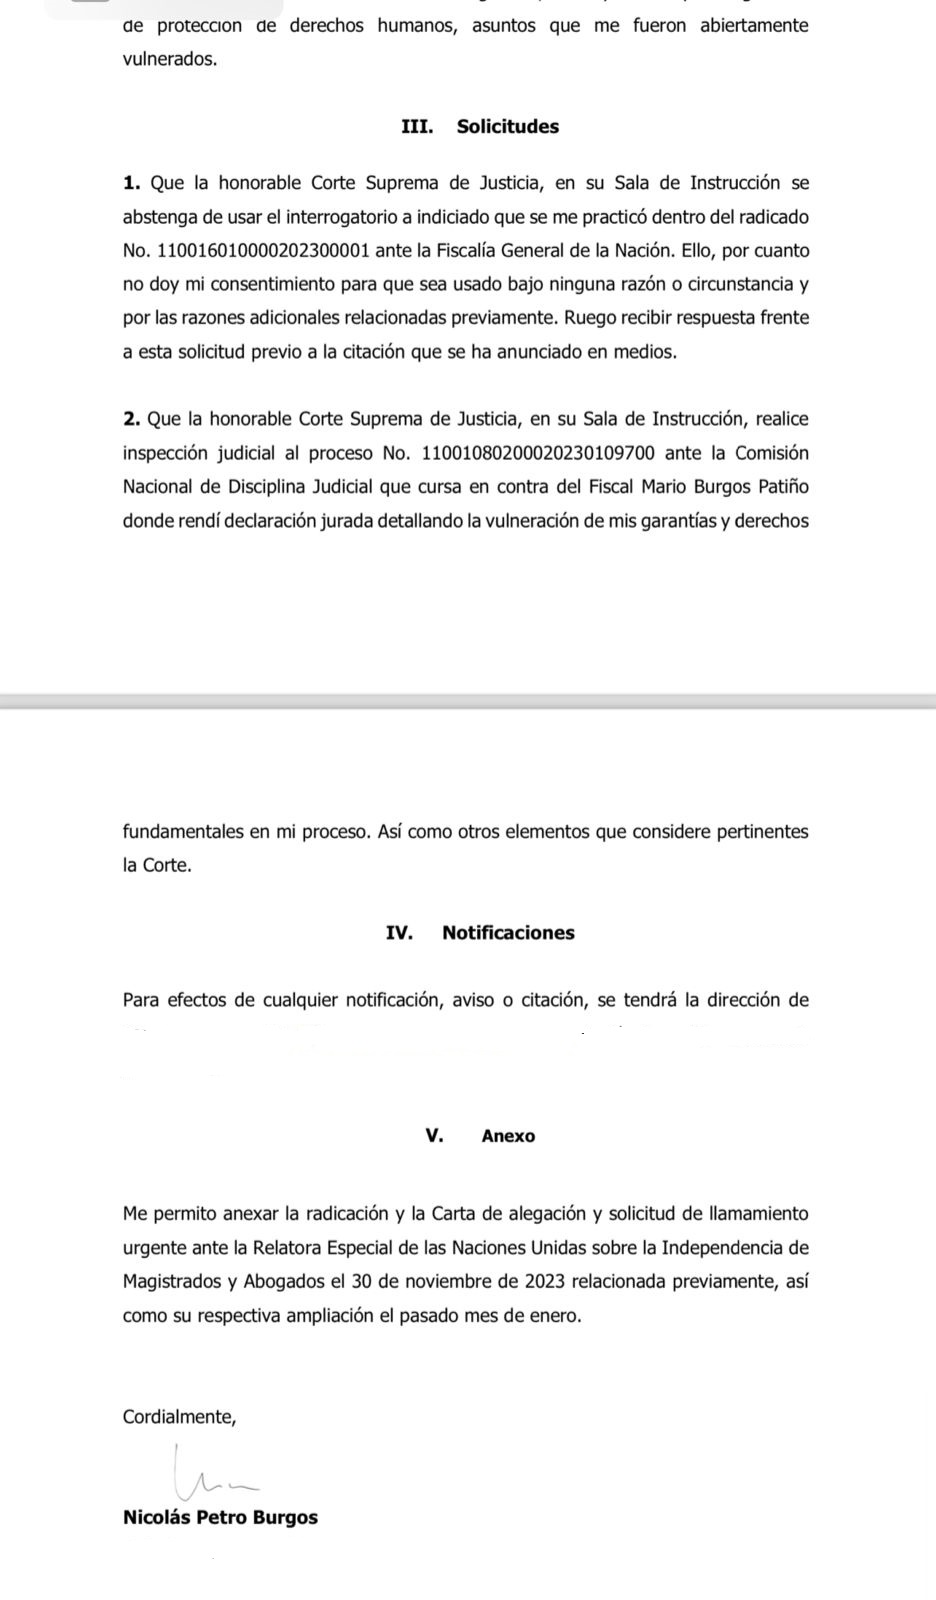 Solicitud de Nicolás Petro a la Corte Suprema.